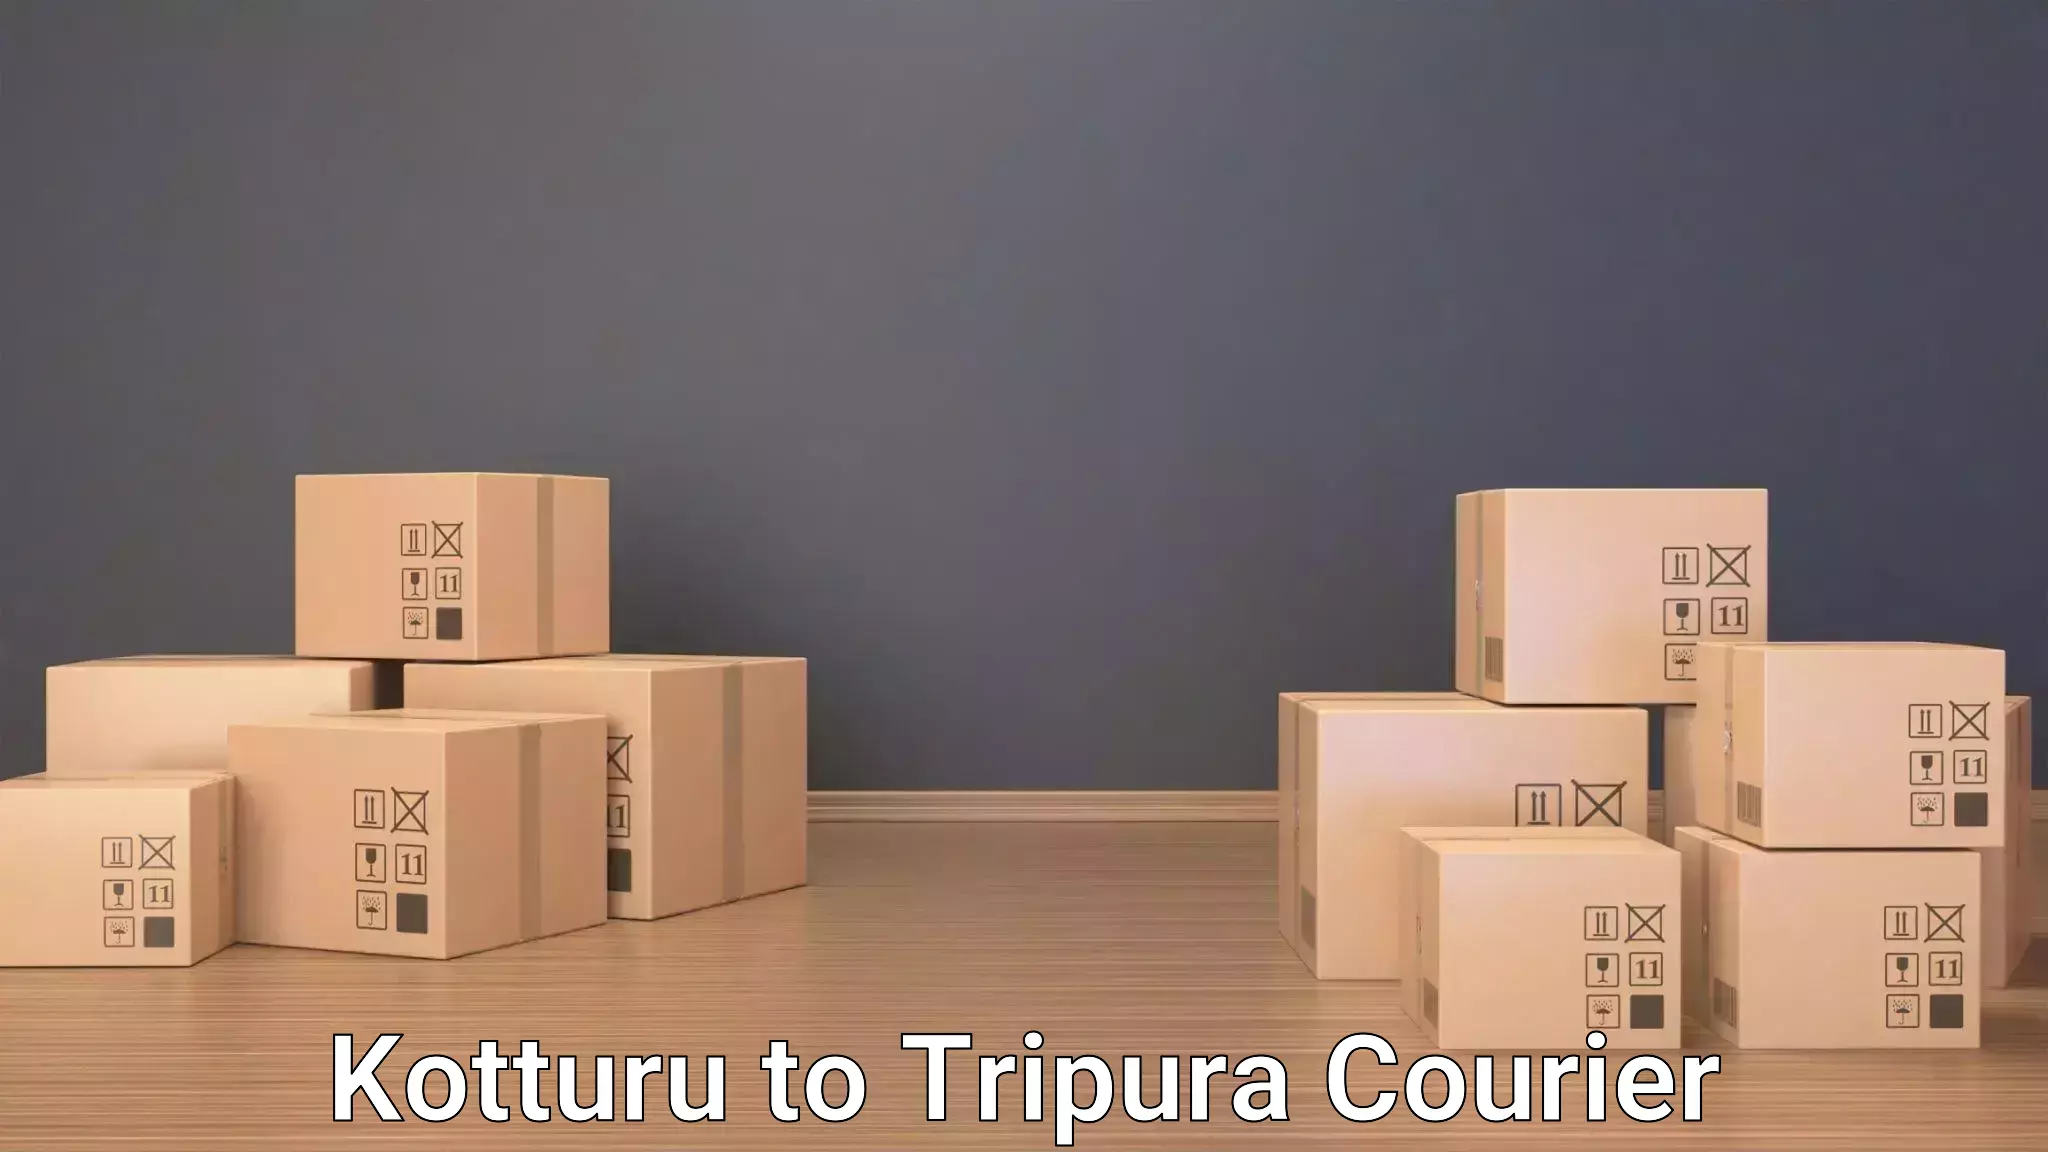 Safe luggage delivery Kotturu to Udaipur Tripura